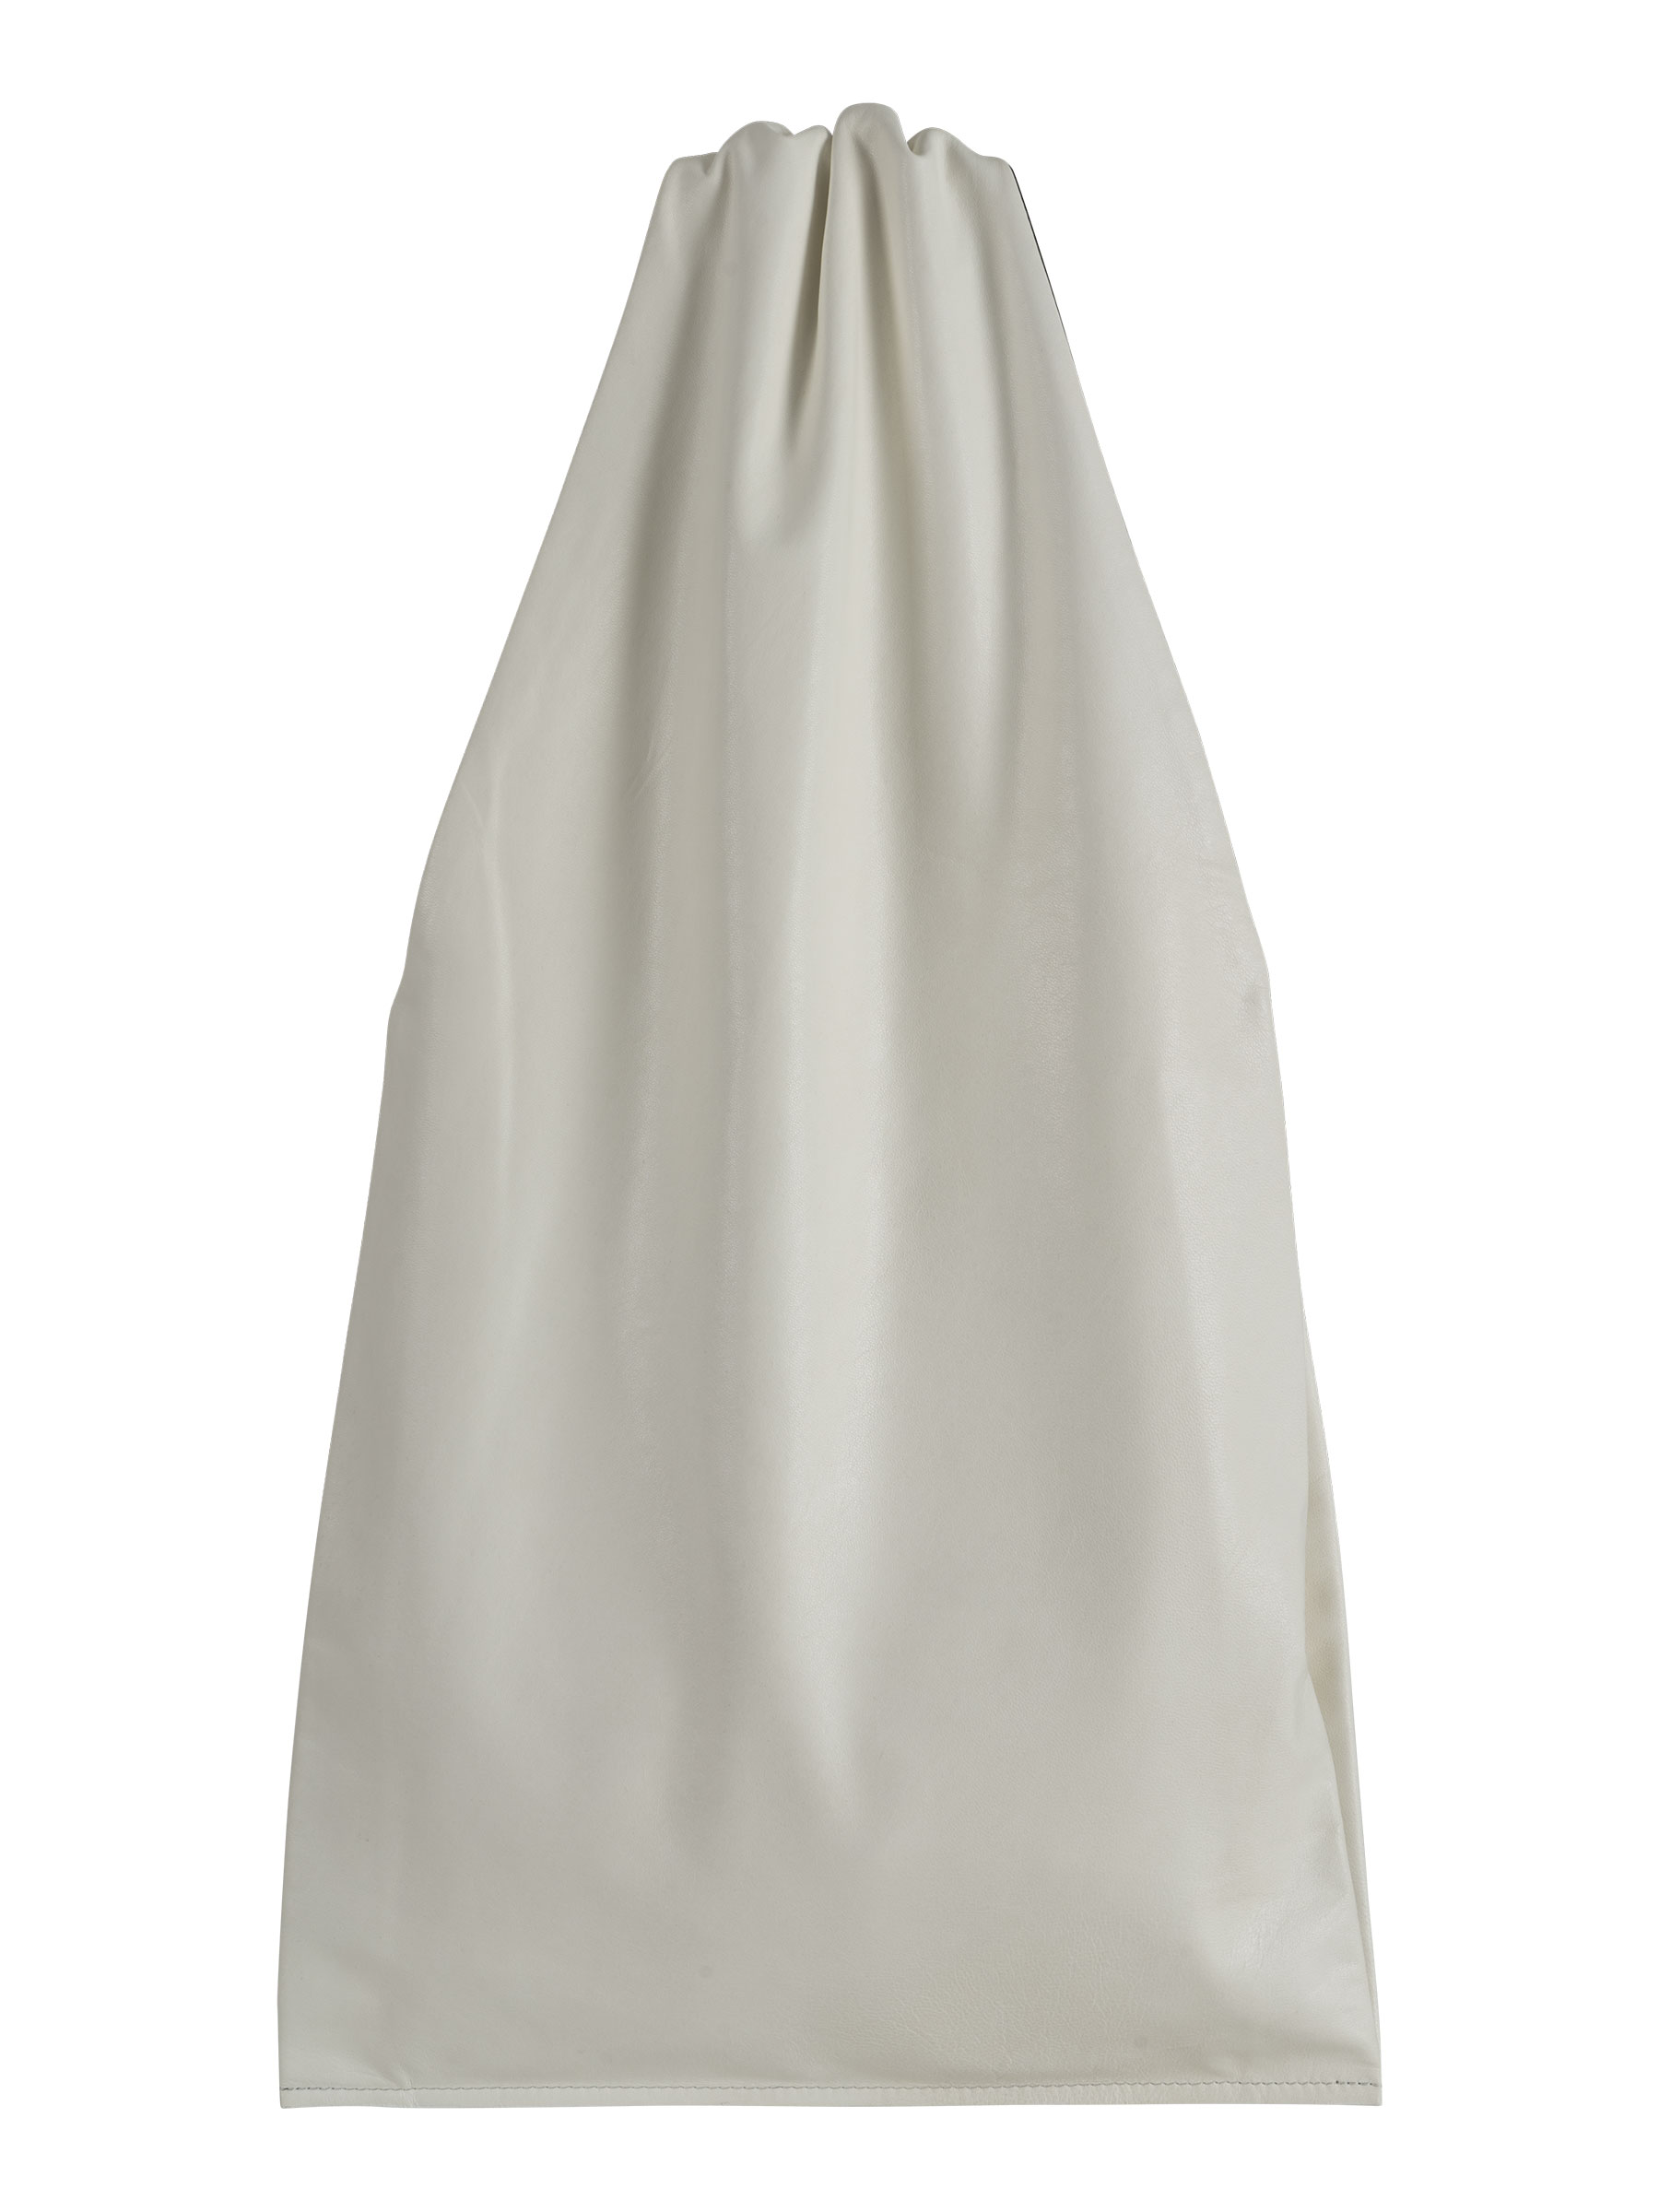 LATO tote bag in off-white lamb nappa leather | TSATSAS